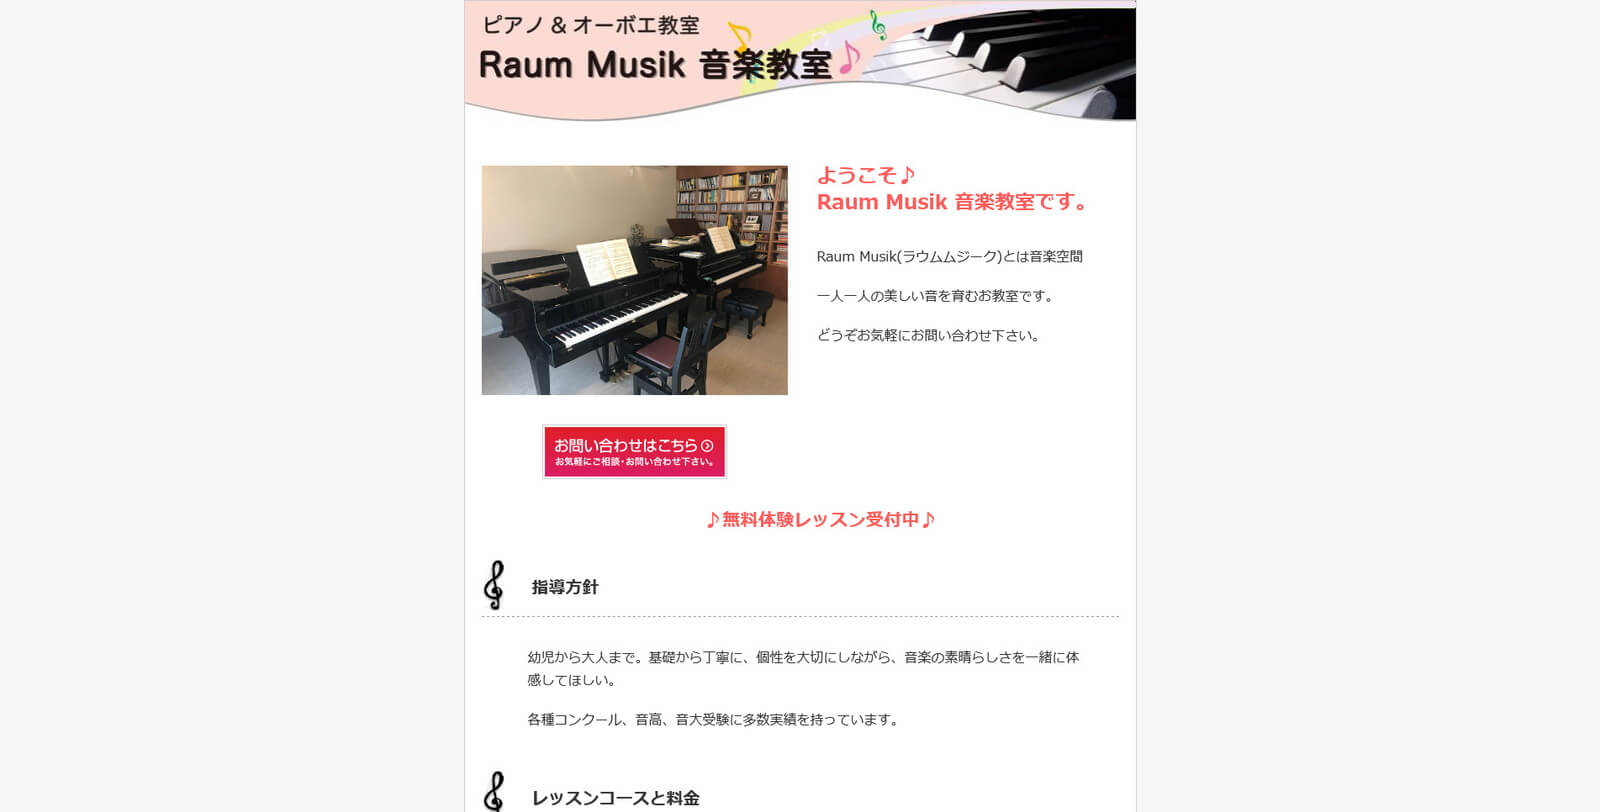  Raum Musik (ラウムムジーク) 音楽教室 